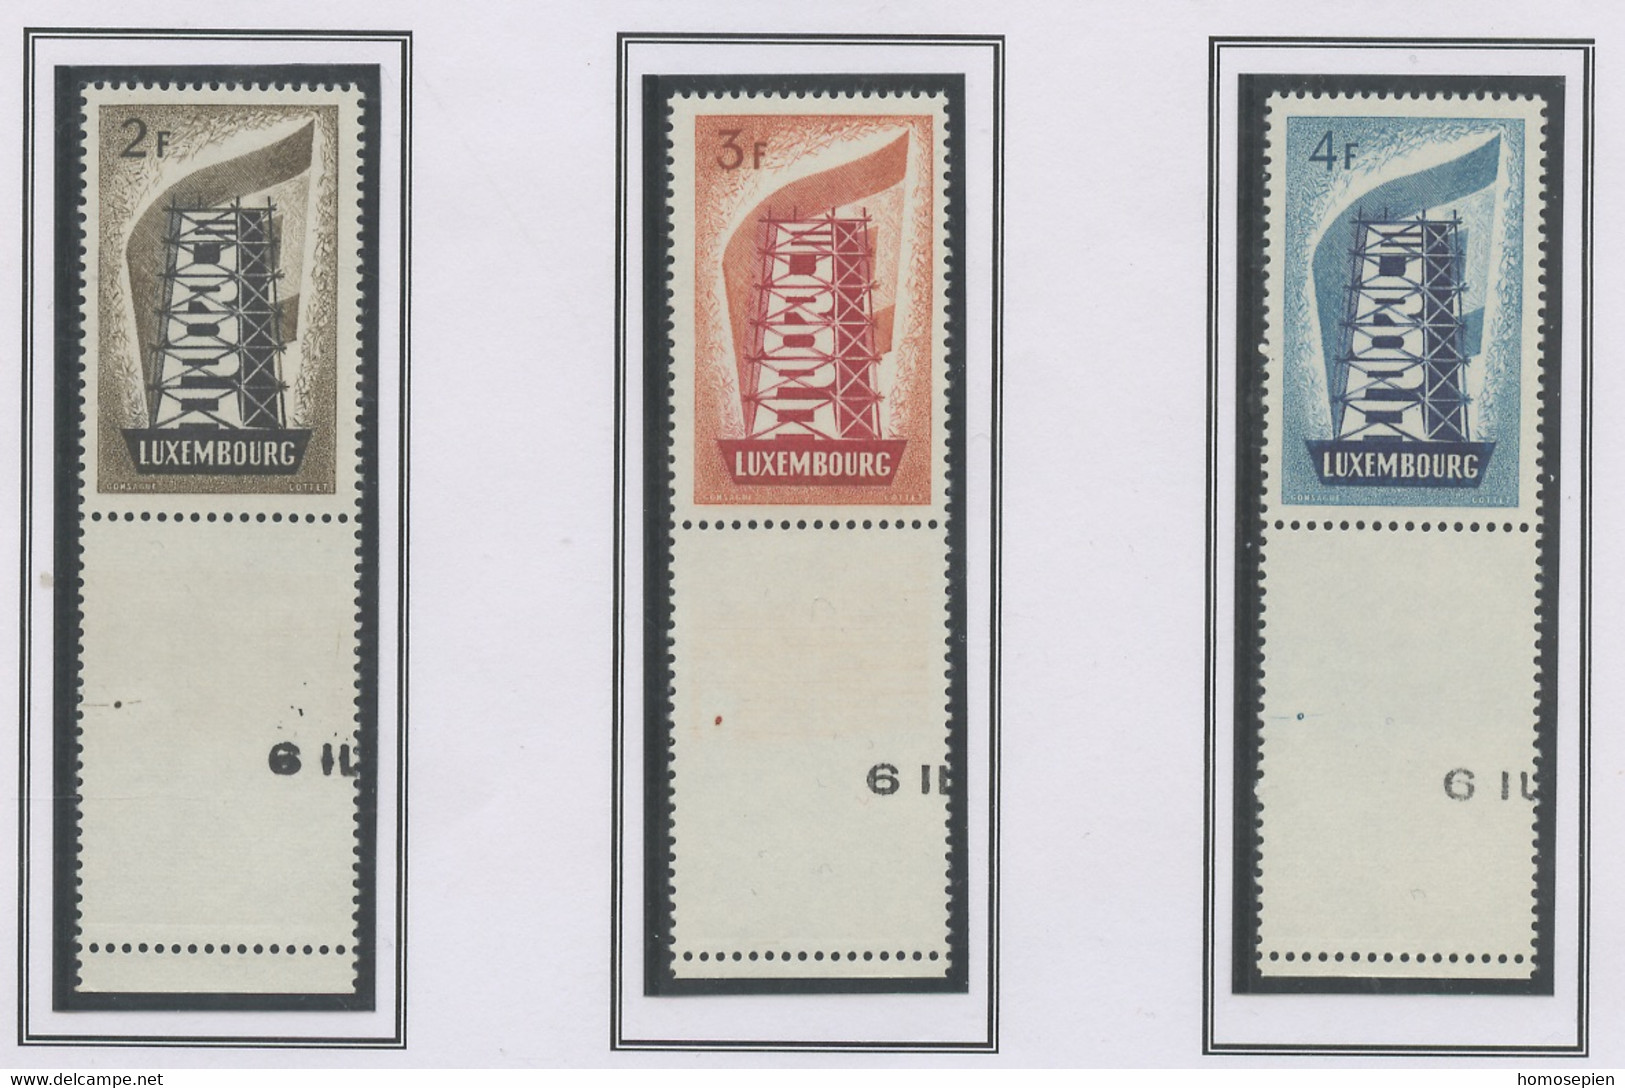 Europa CEPT 1956 Luxembourg - Luxemburg Y&T N°514 à 516 - Michel N°555 à 557 *** - Avec Vignette - 1956